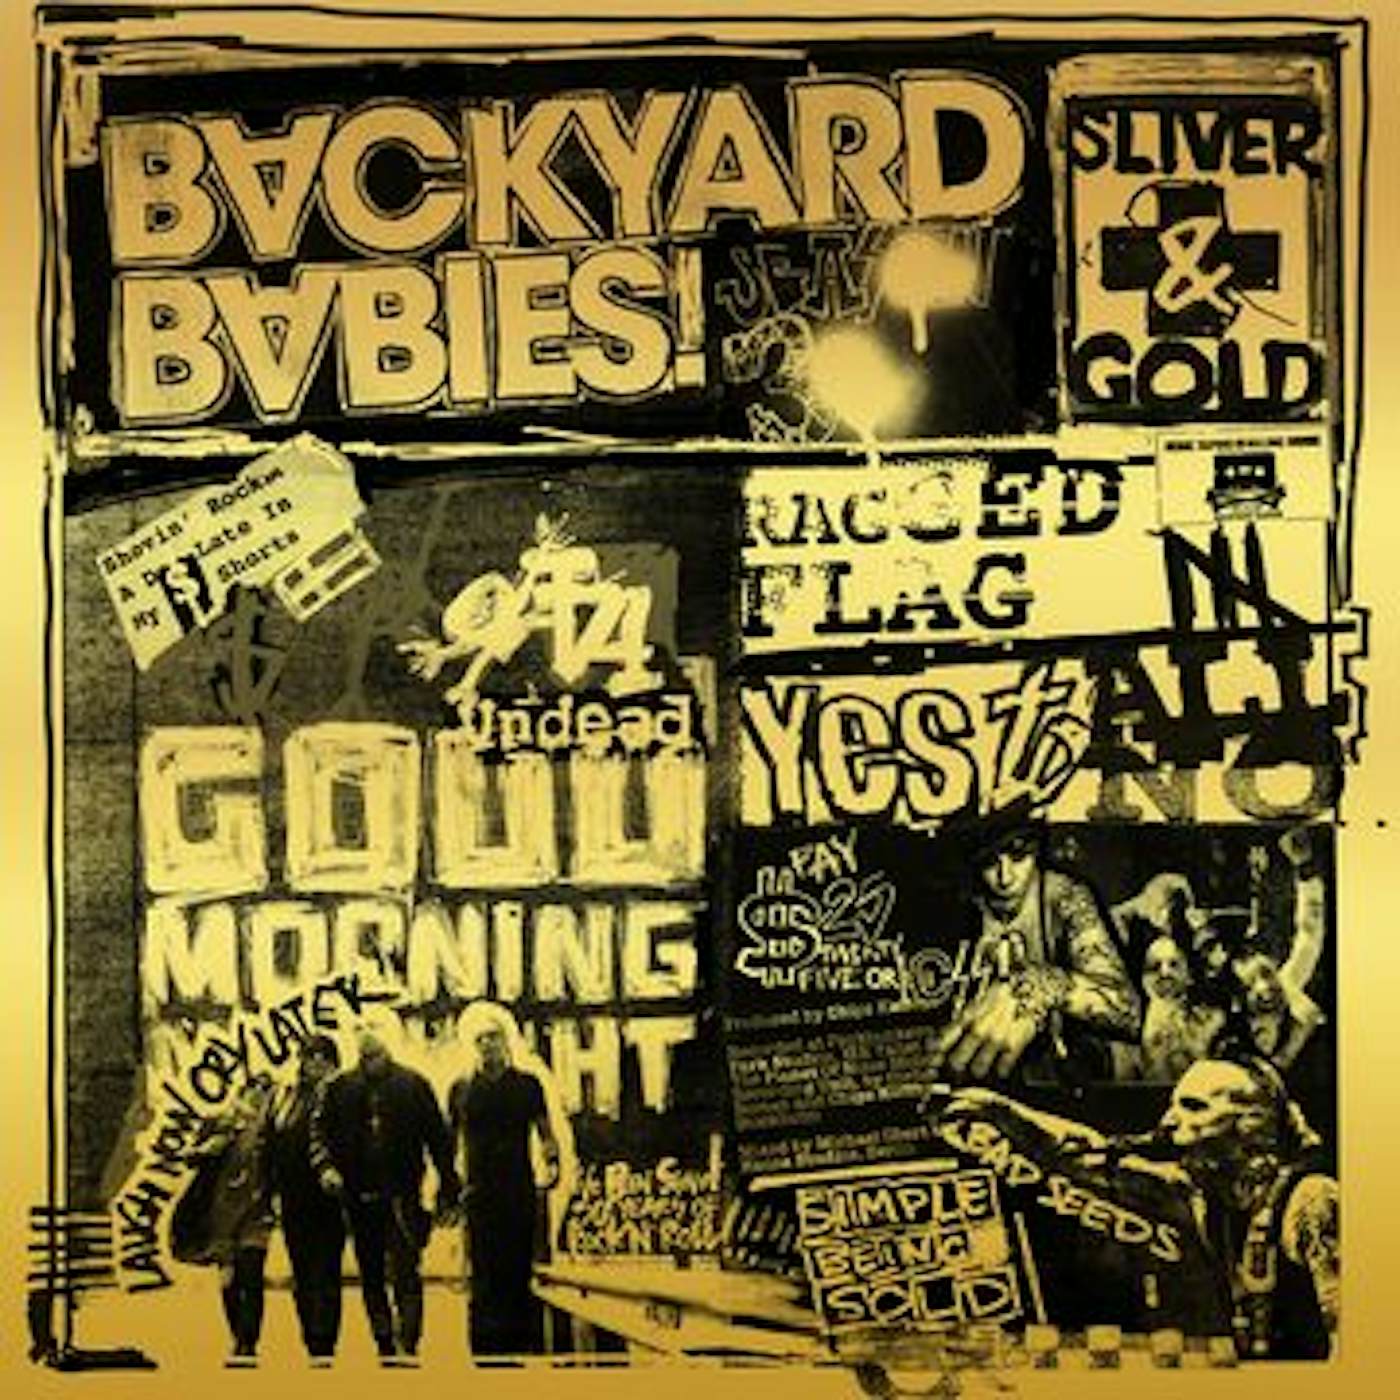 Backyard Babies SLIVER & GOLD CD